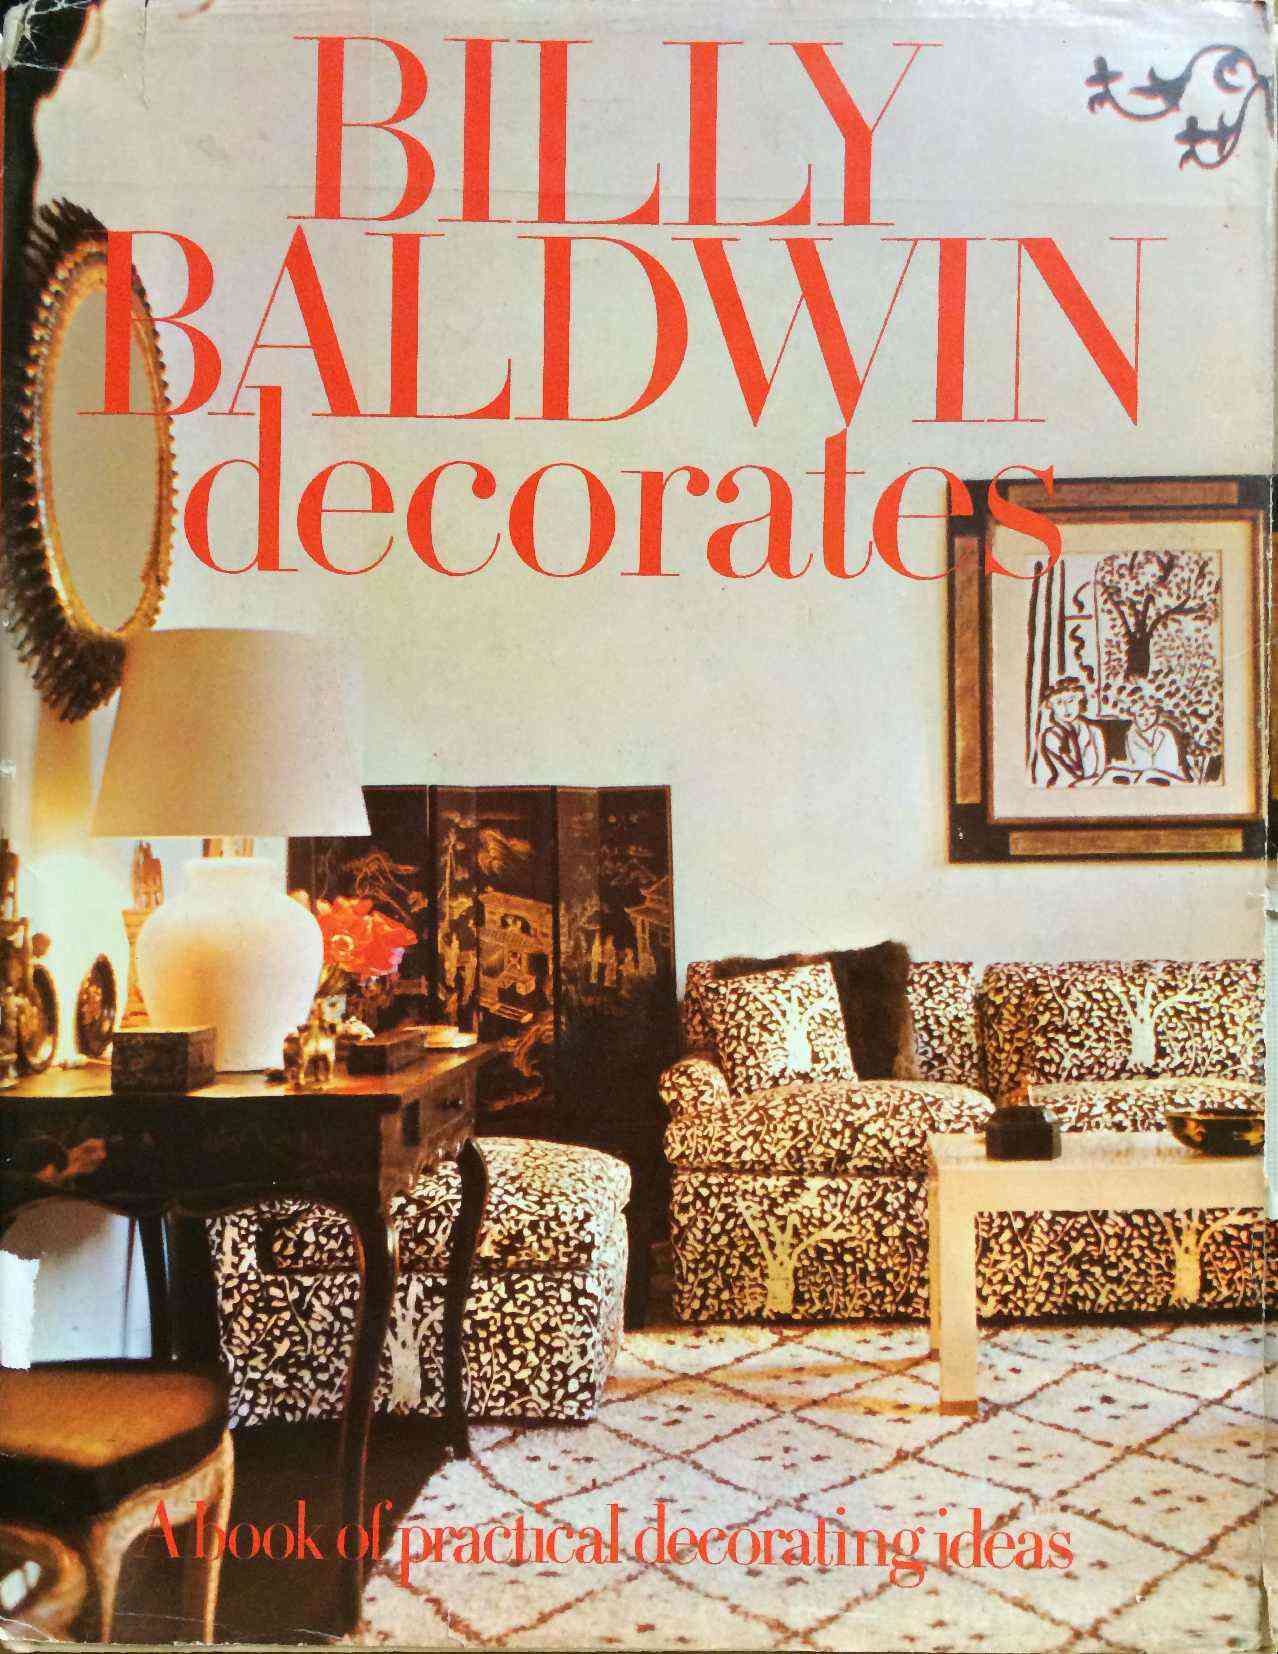 Billy Baldwin dekoriert